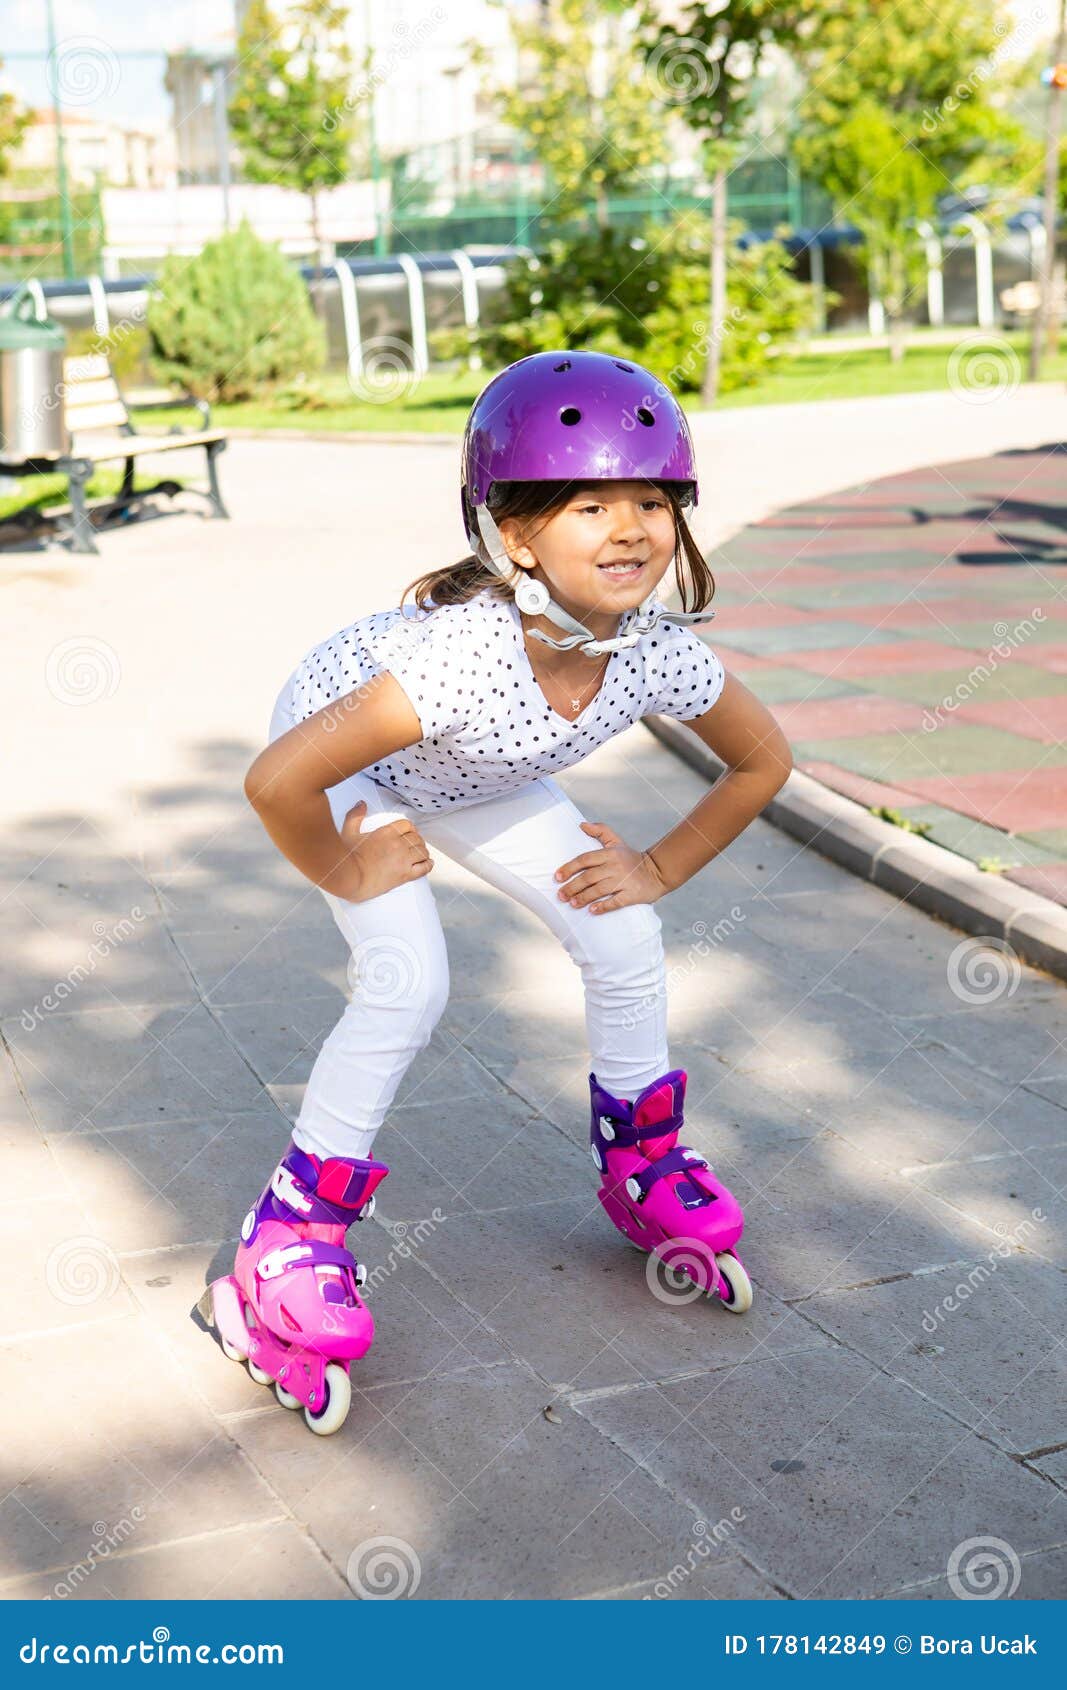 tyfoon stilte onenigheid Little Girl on Roller Skates Stock Image - Image of lifestyle, skating:  178142849